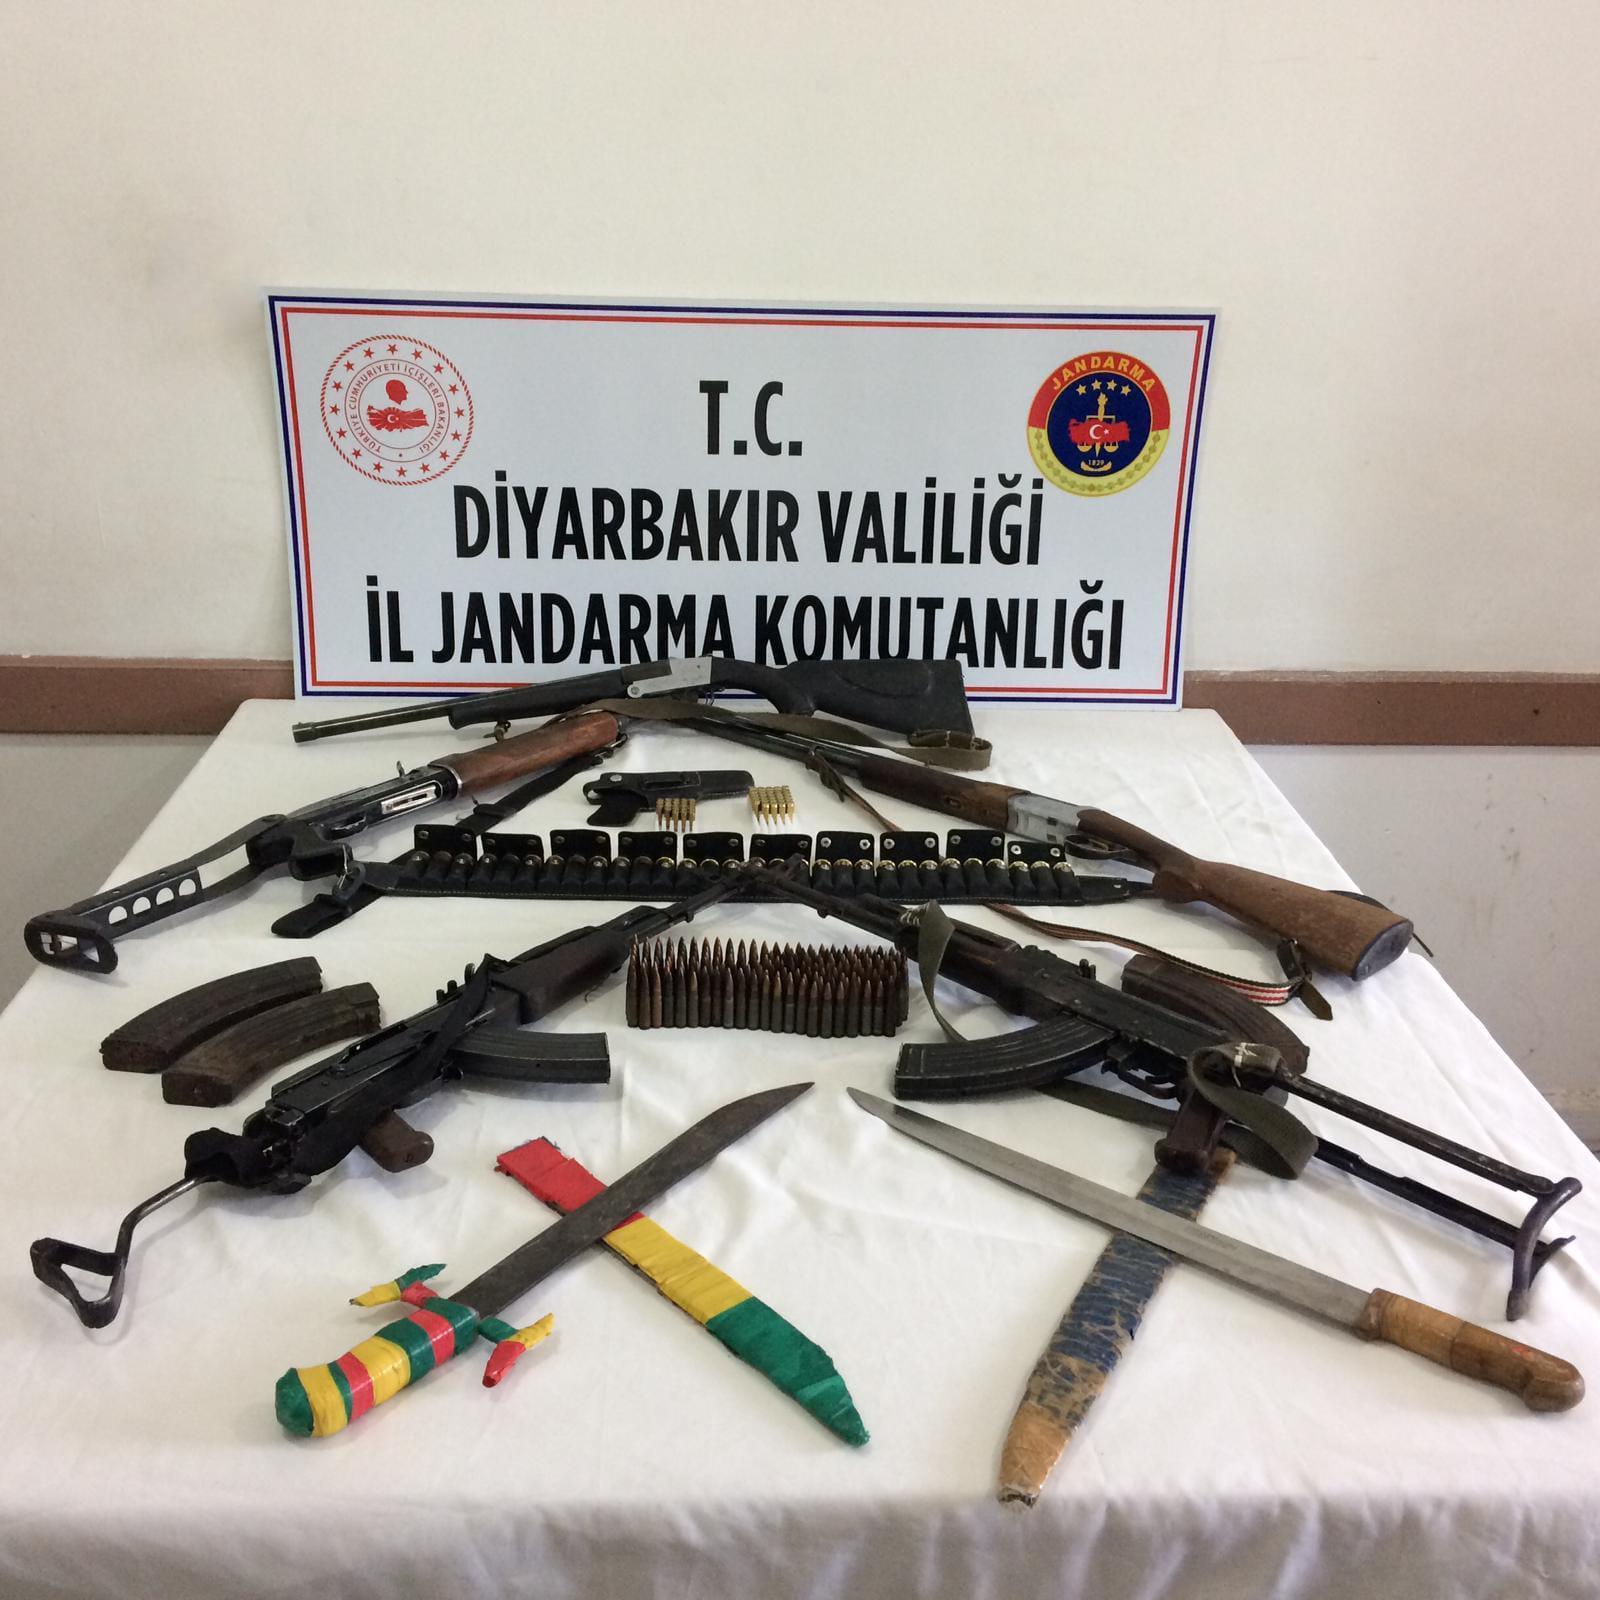 Diyarbakır’da silah kaçakçılarına operasyon 7 kişi gözaltına alındı